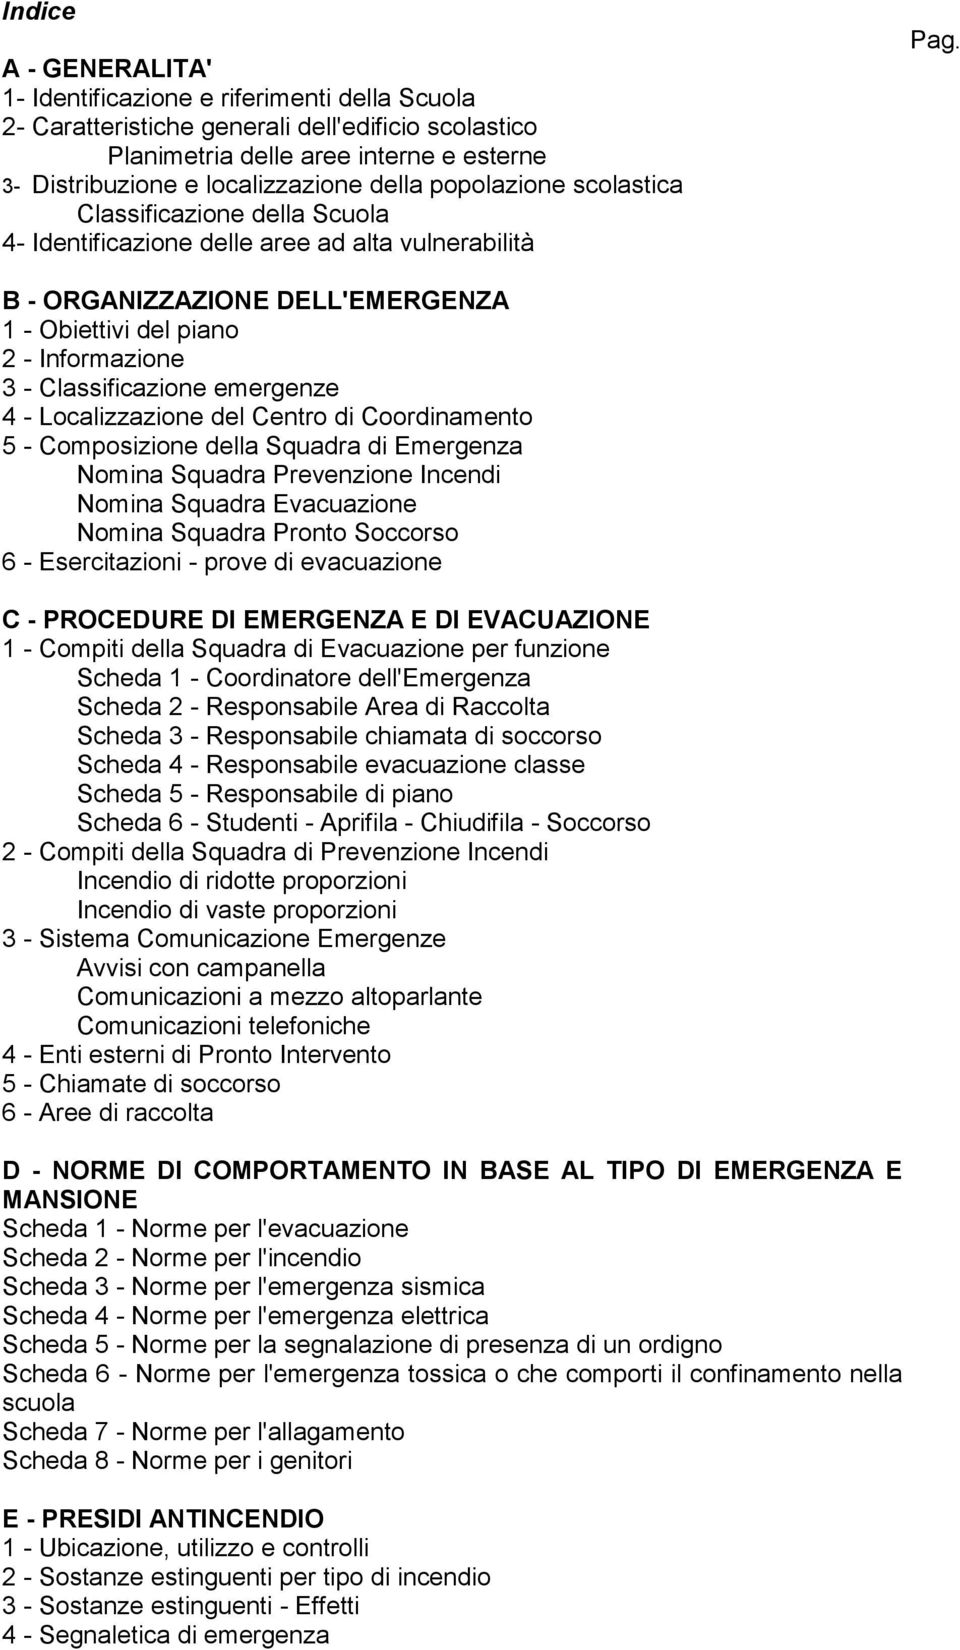 B - ORGANIZZAZIONE DELL'EMERGENZA 1 - Obiettivi del piano 2 - Informazione 3 - Classificazione emergenze 4 - Localizzazione del Centro di Coordinamento 5 - Composizione della Squadra di Emergenza